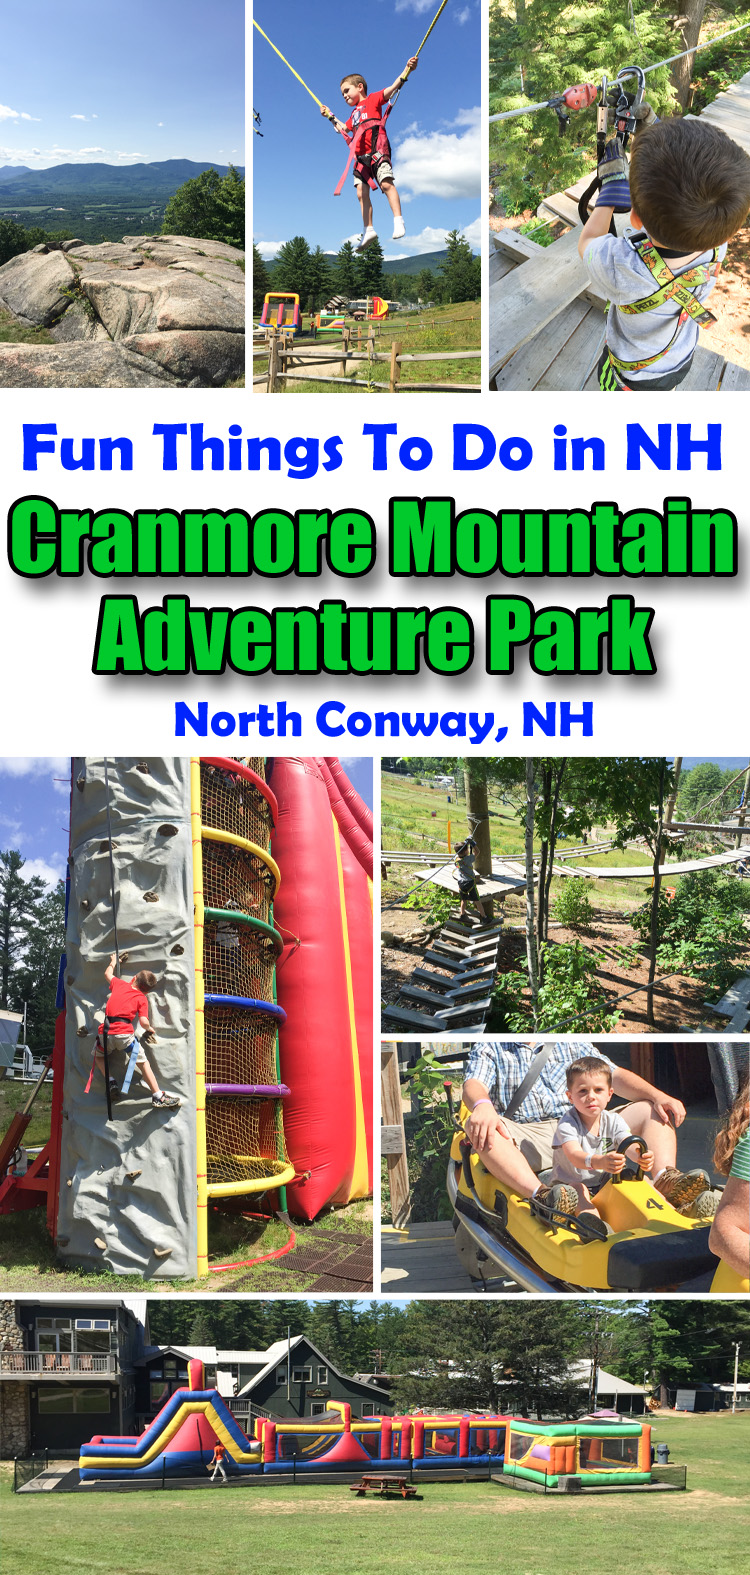 cranmore mountain adventure center